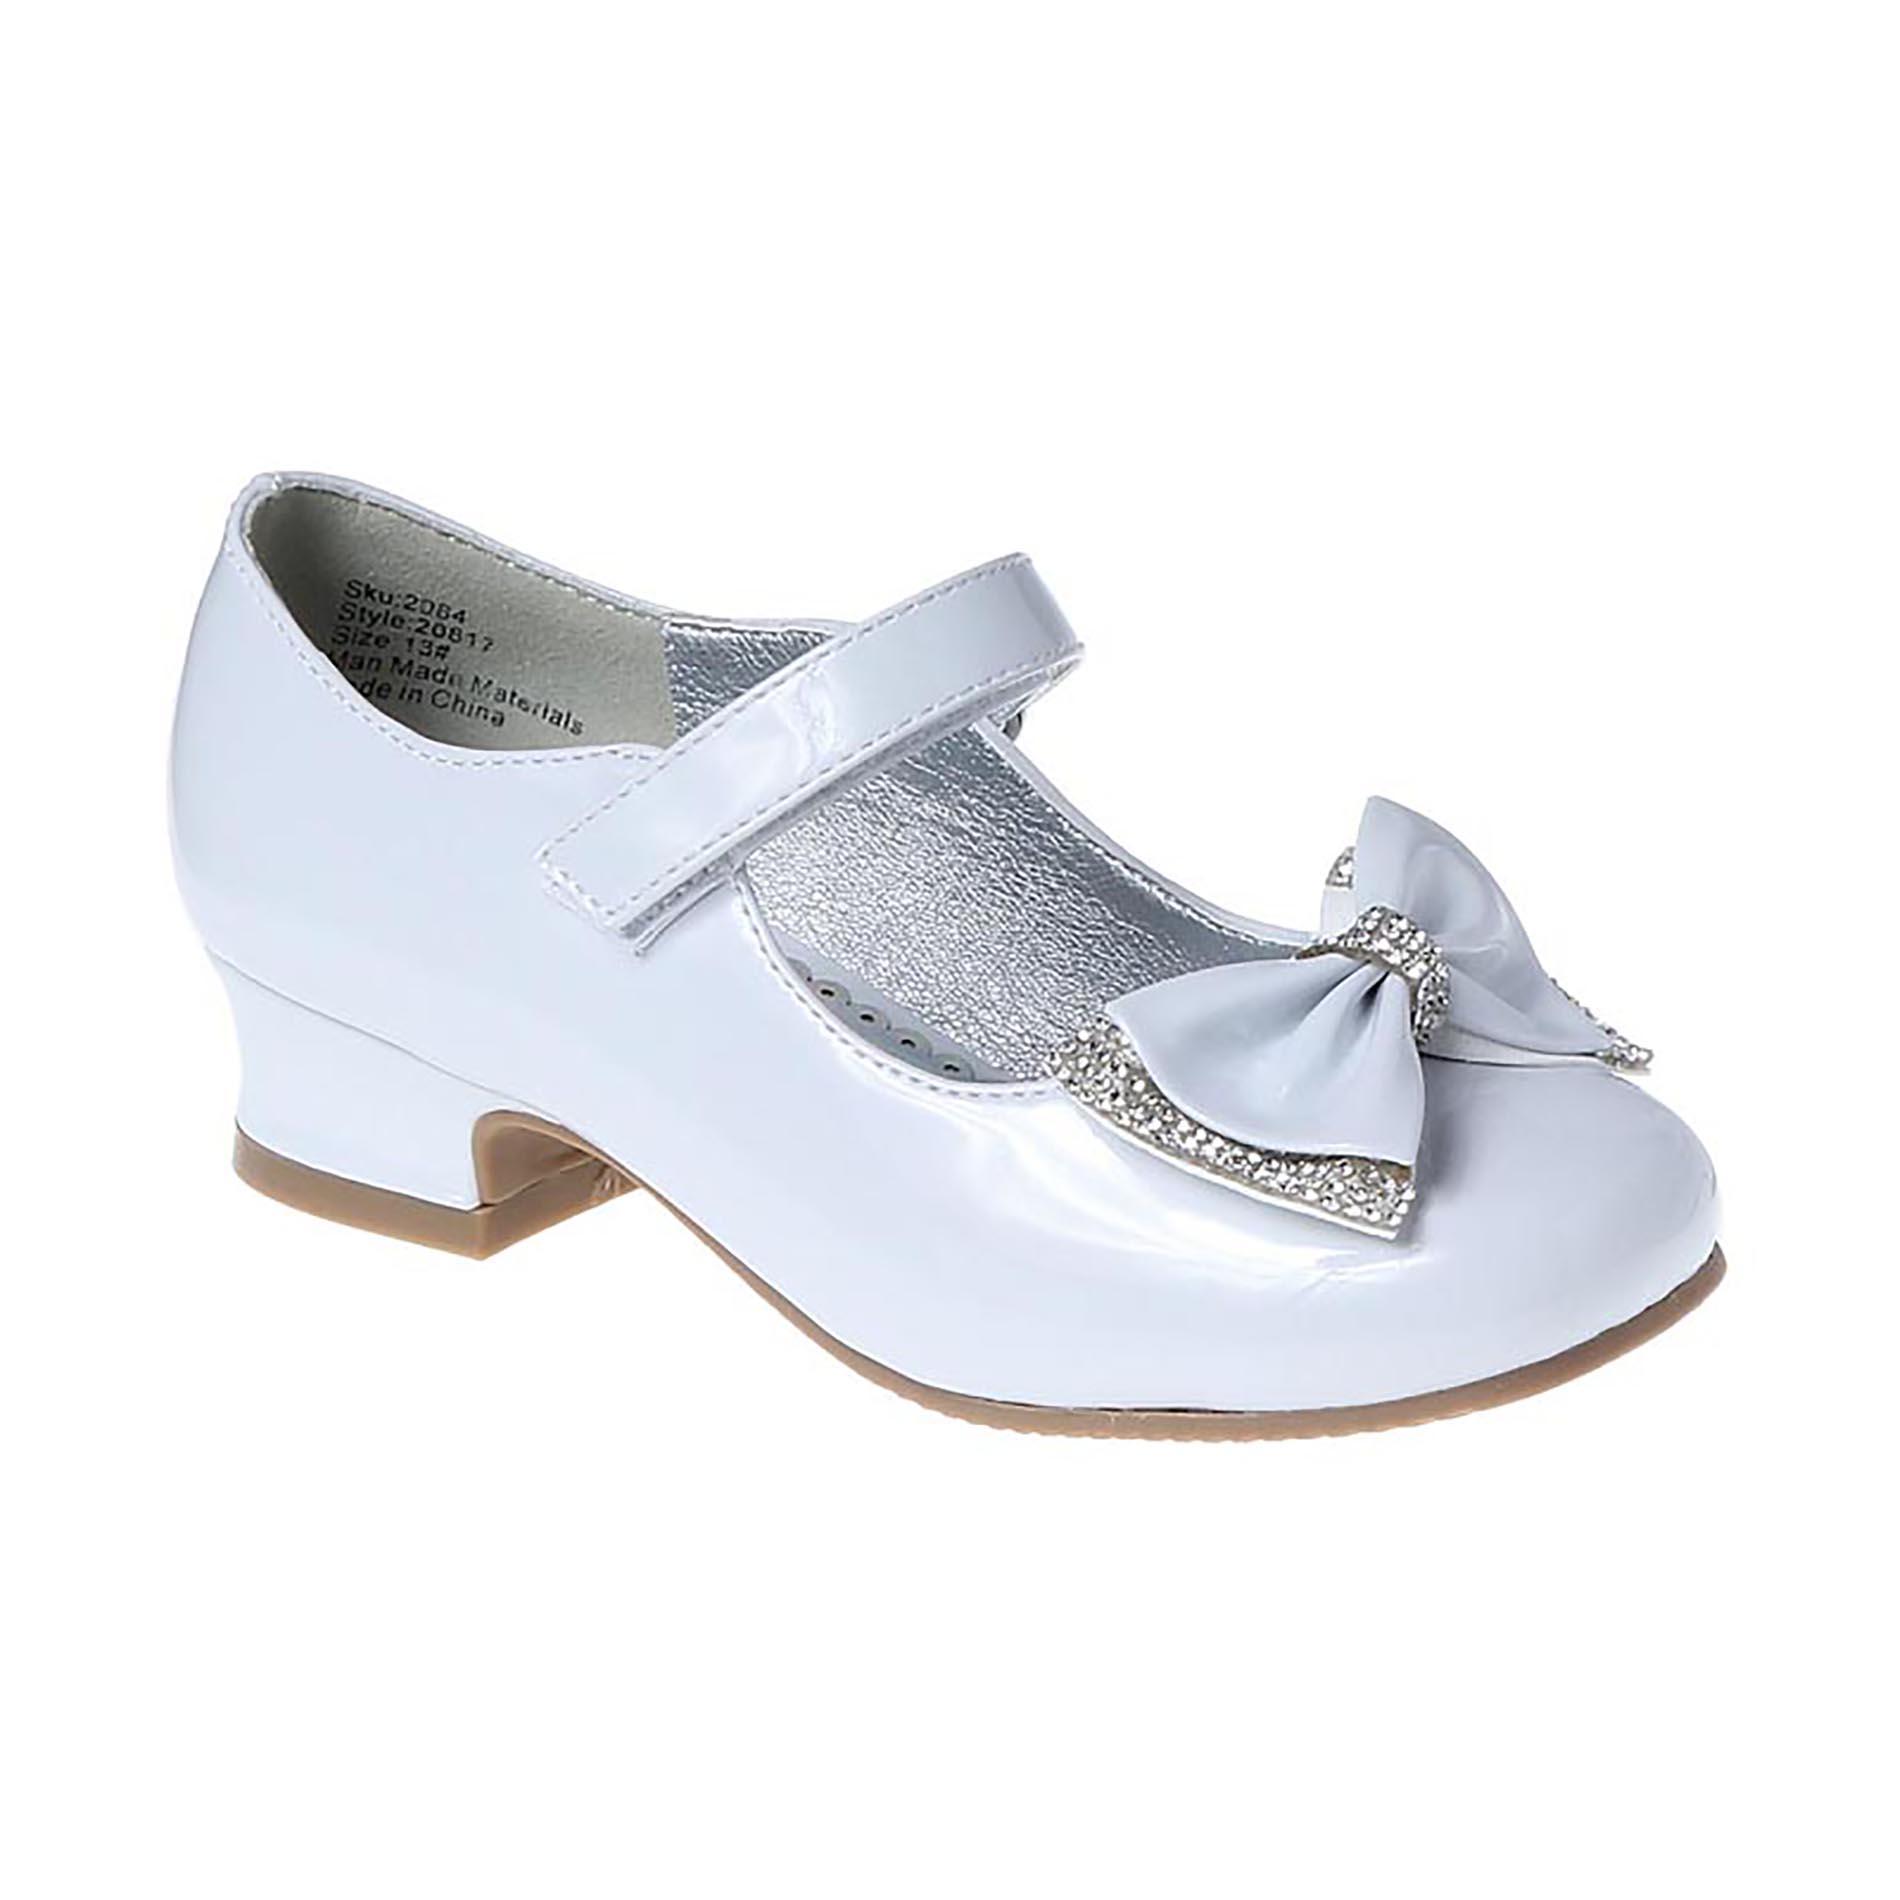 Petalia Girls' Bow Mary Jane Shoe - White